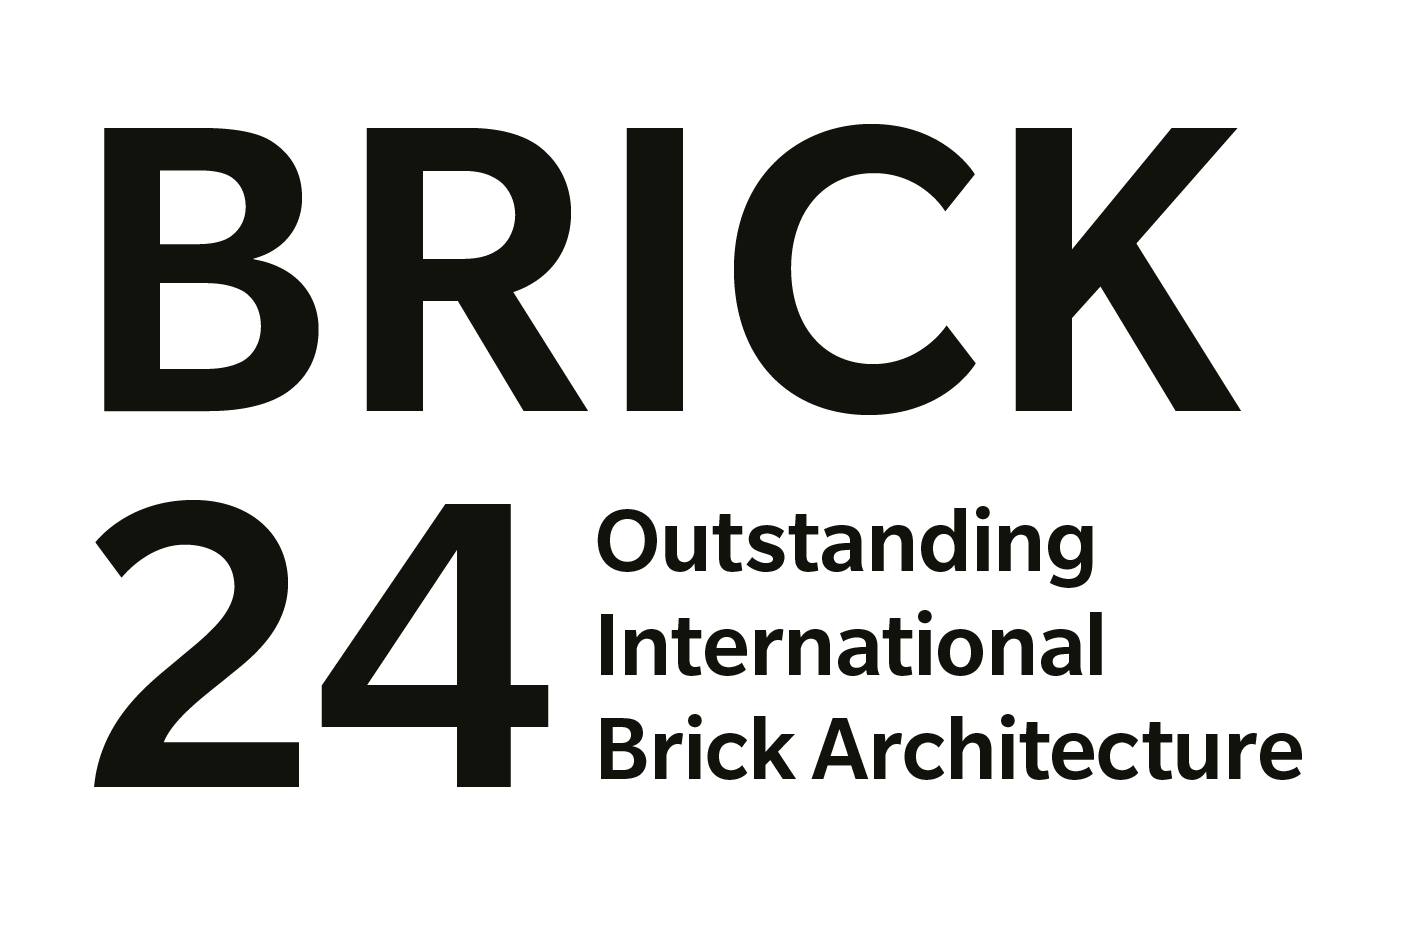 Inovativní cihlové stavby se utkají o mezinárodní ocenění Brick Award 24